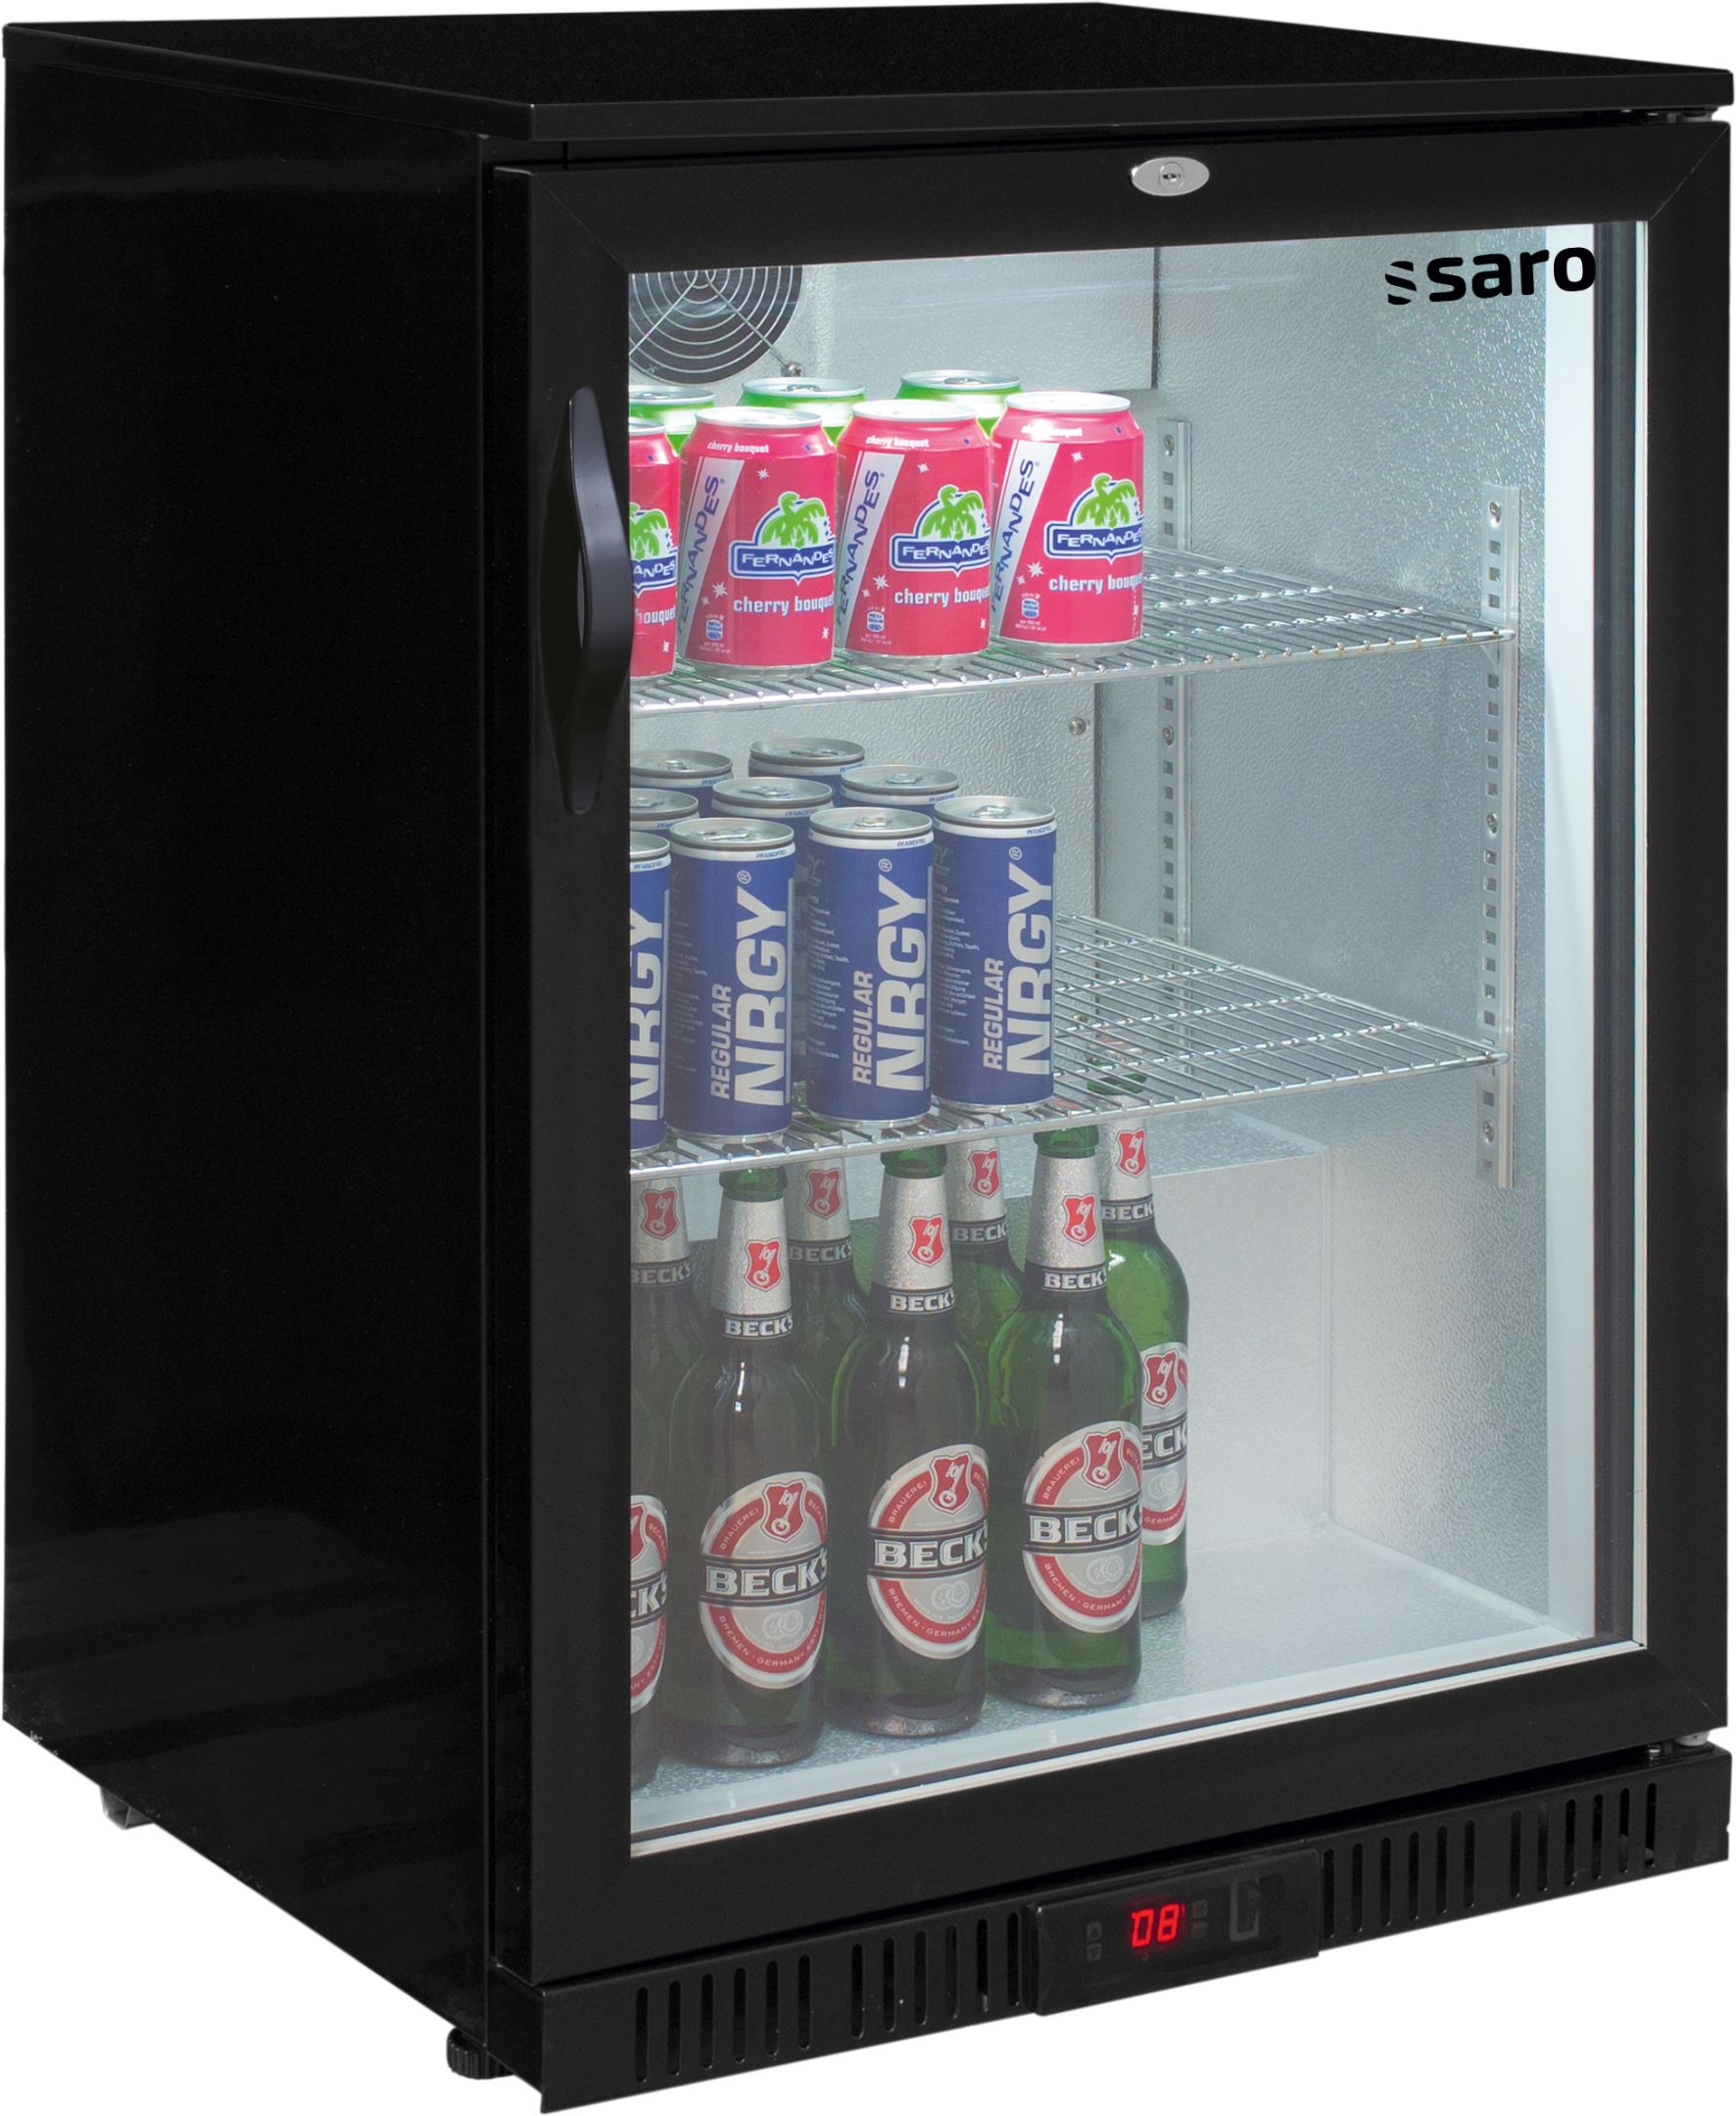 Saro Barkühlschrank, Getränkekühlschrank mit 1 Tür, Modell BC 138